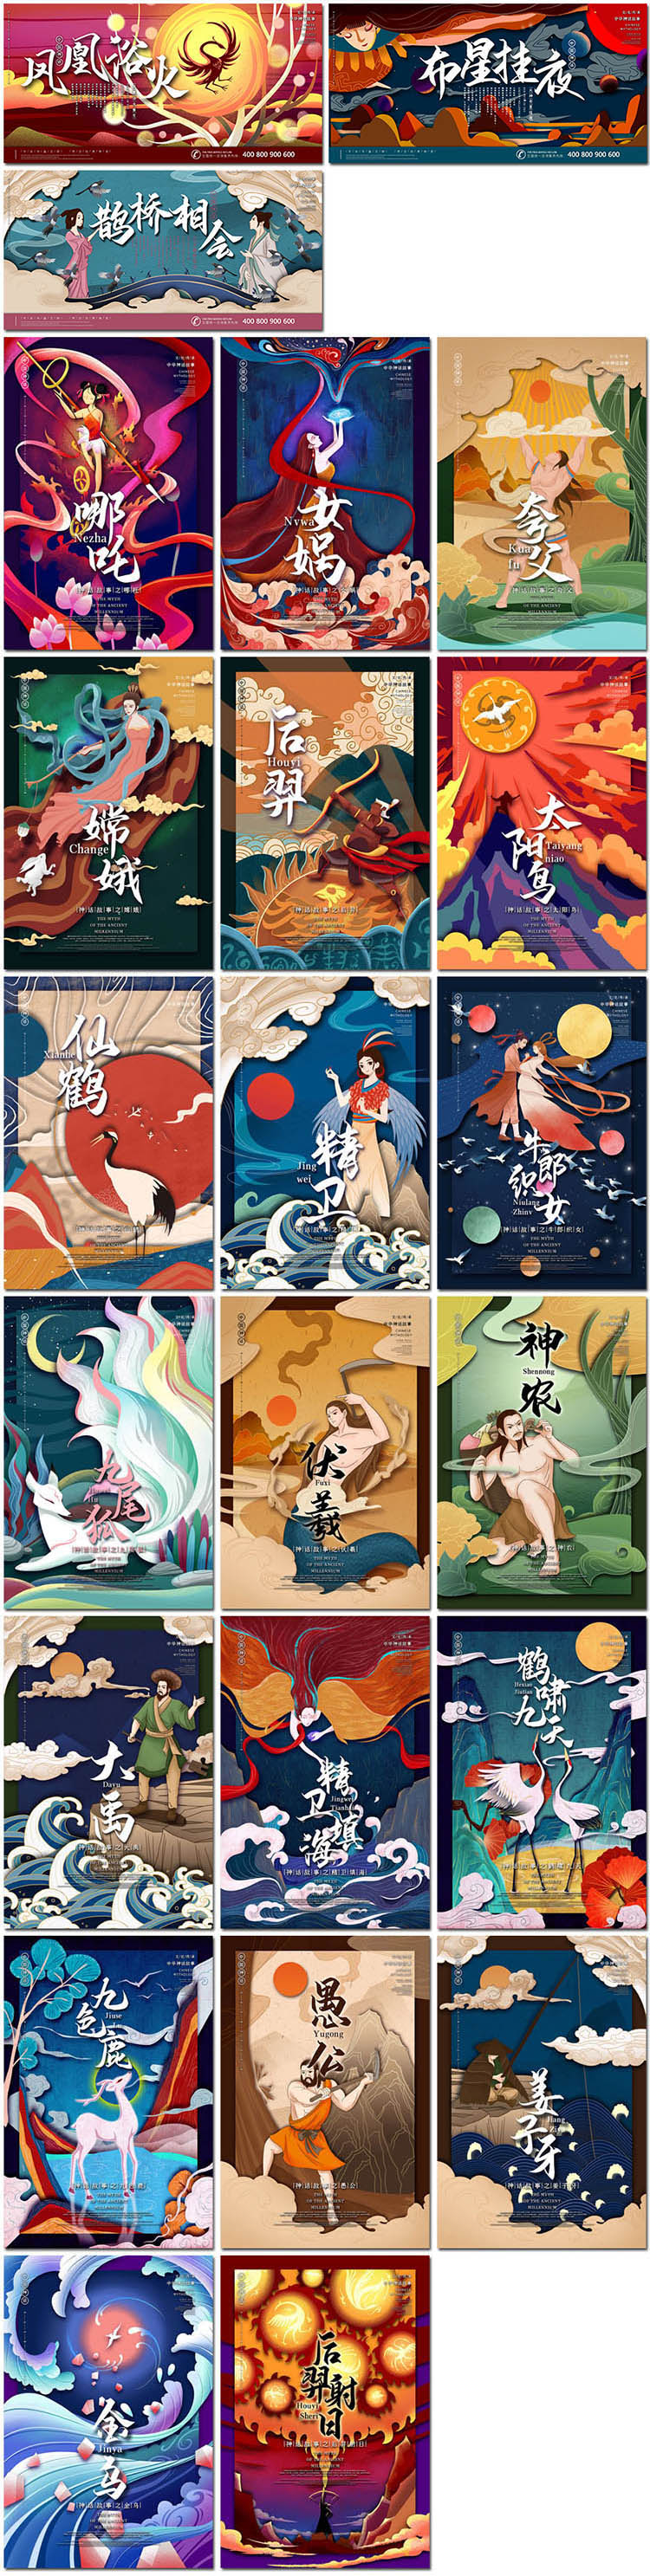 创意国潮风中国古代神话传说海报人物故事插画海报素材设计模板